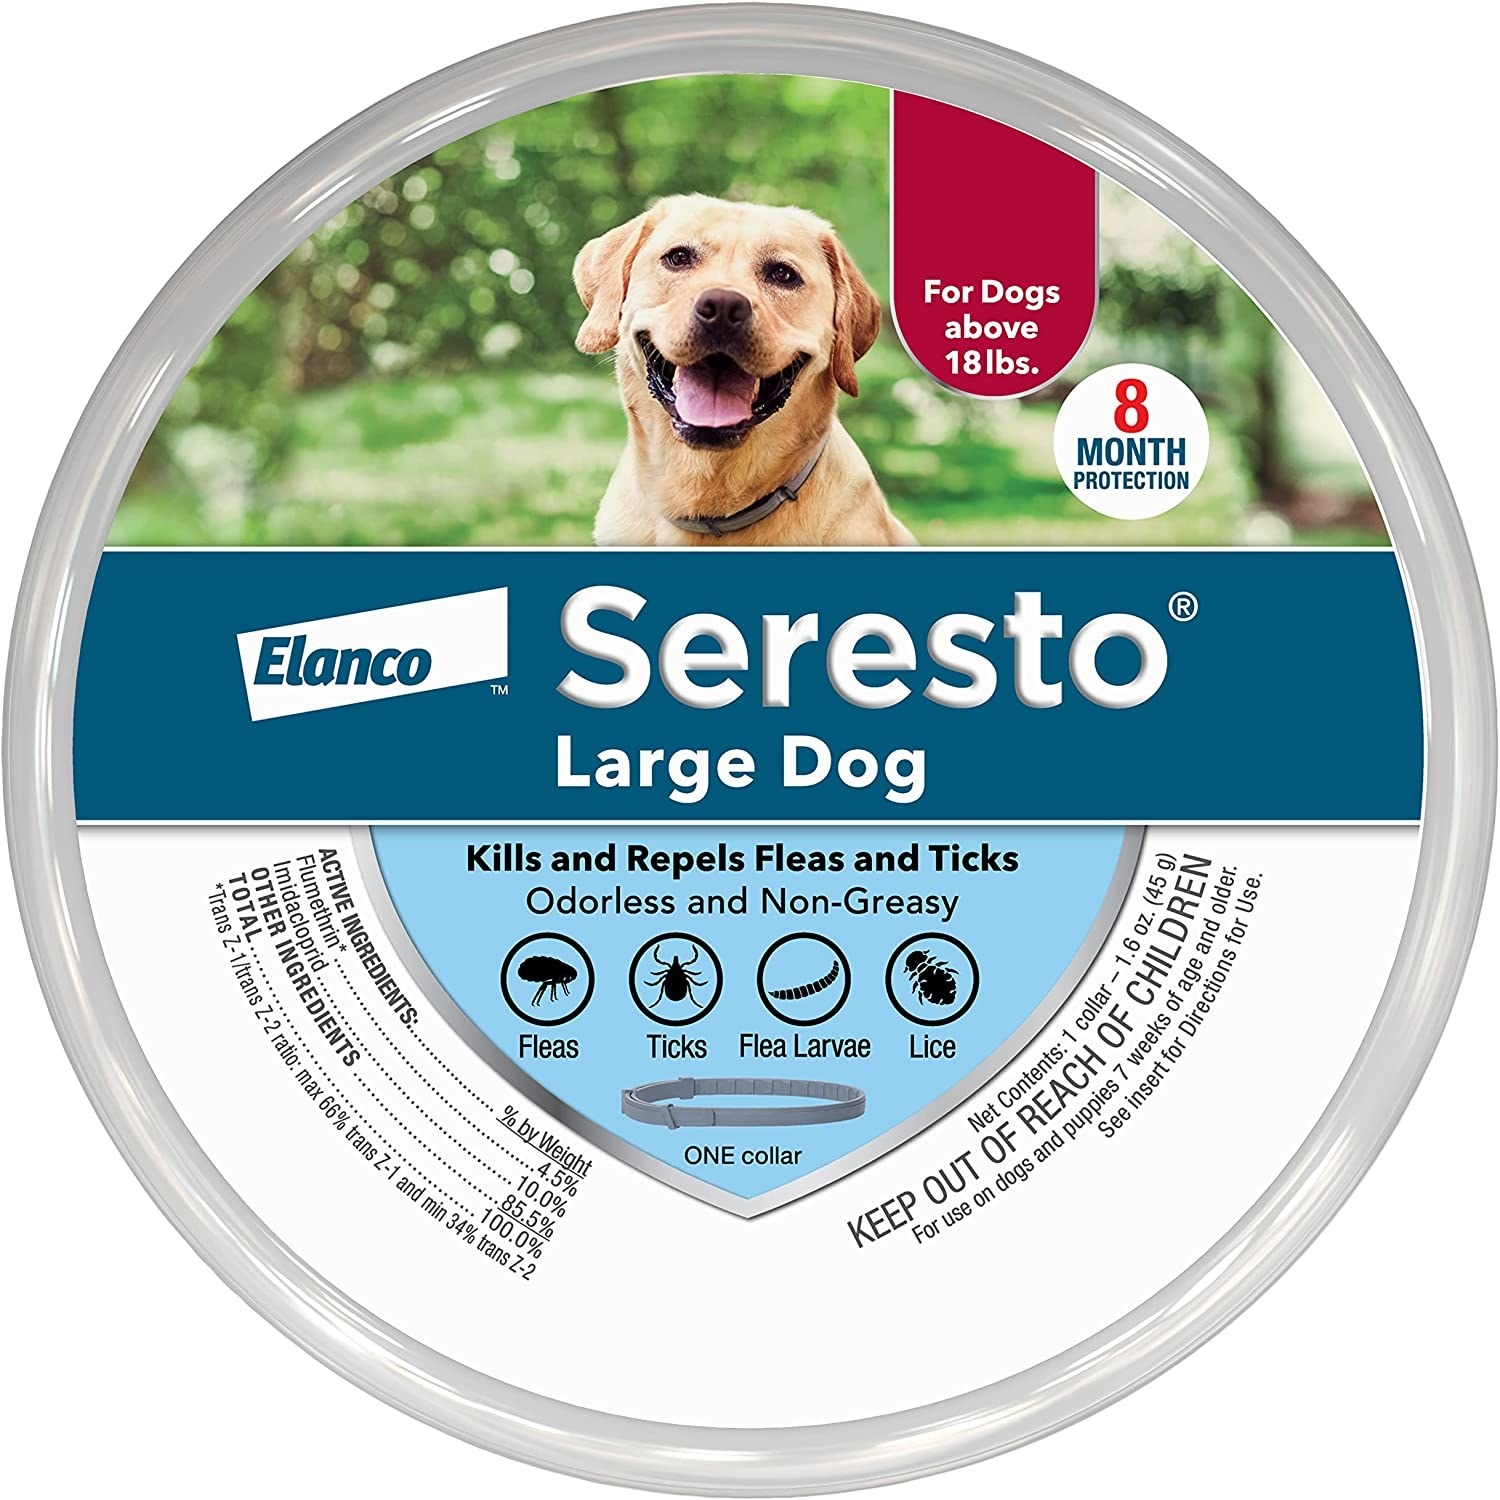 Packaging for Seresto dog collar